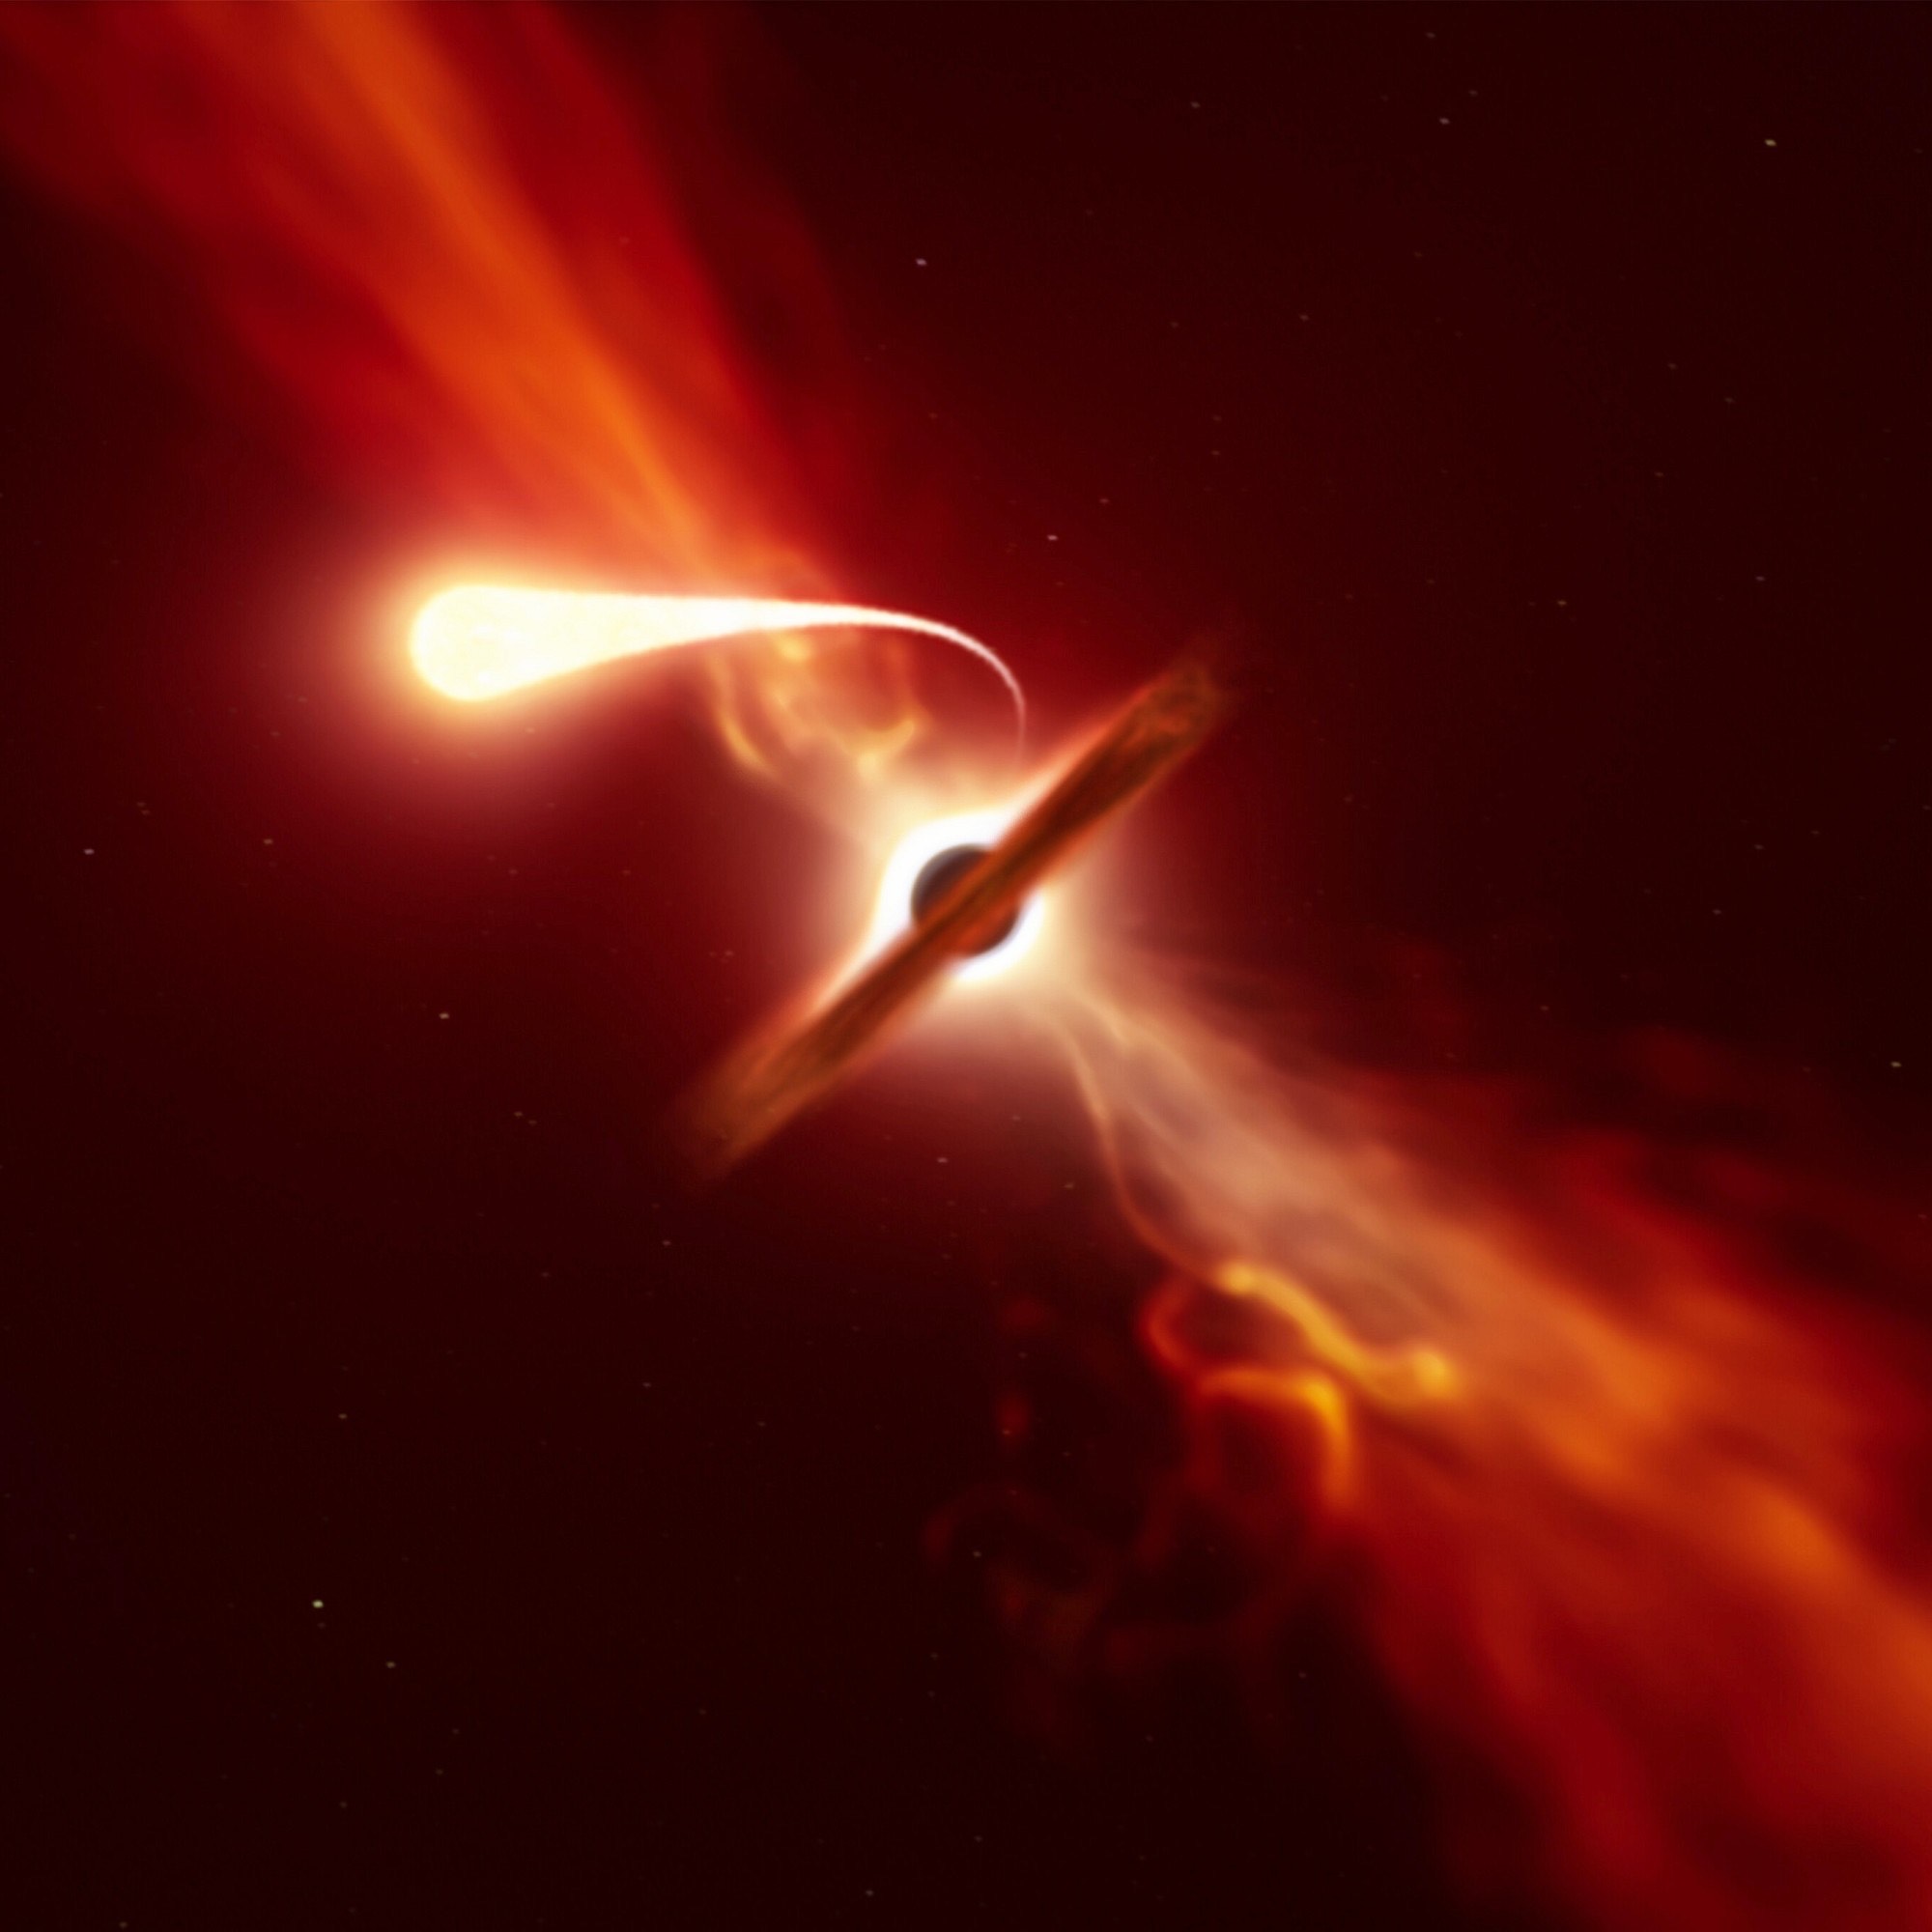 黑洞吞噬恒星 星球图片